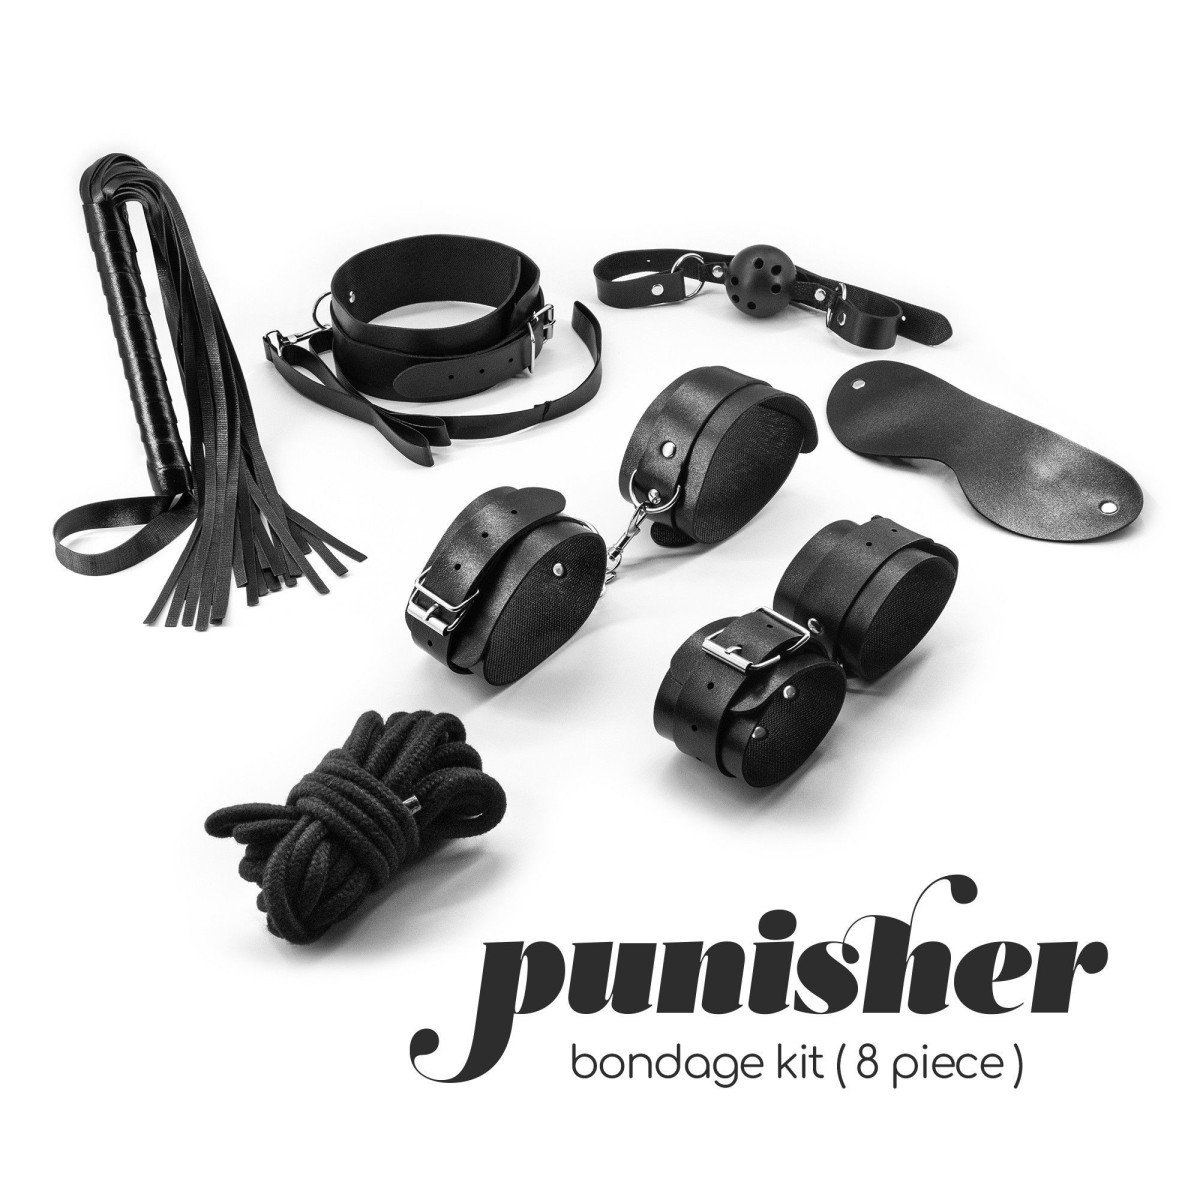 Crushious Punisher Bondage Kit, sada 8 ks BDSM hraček